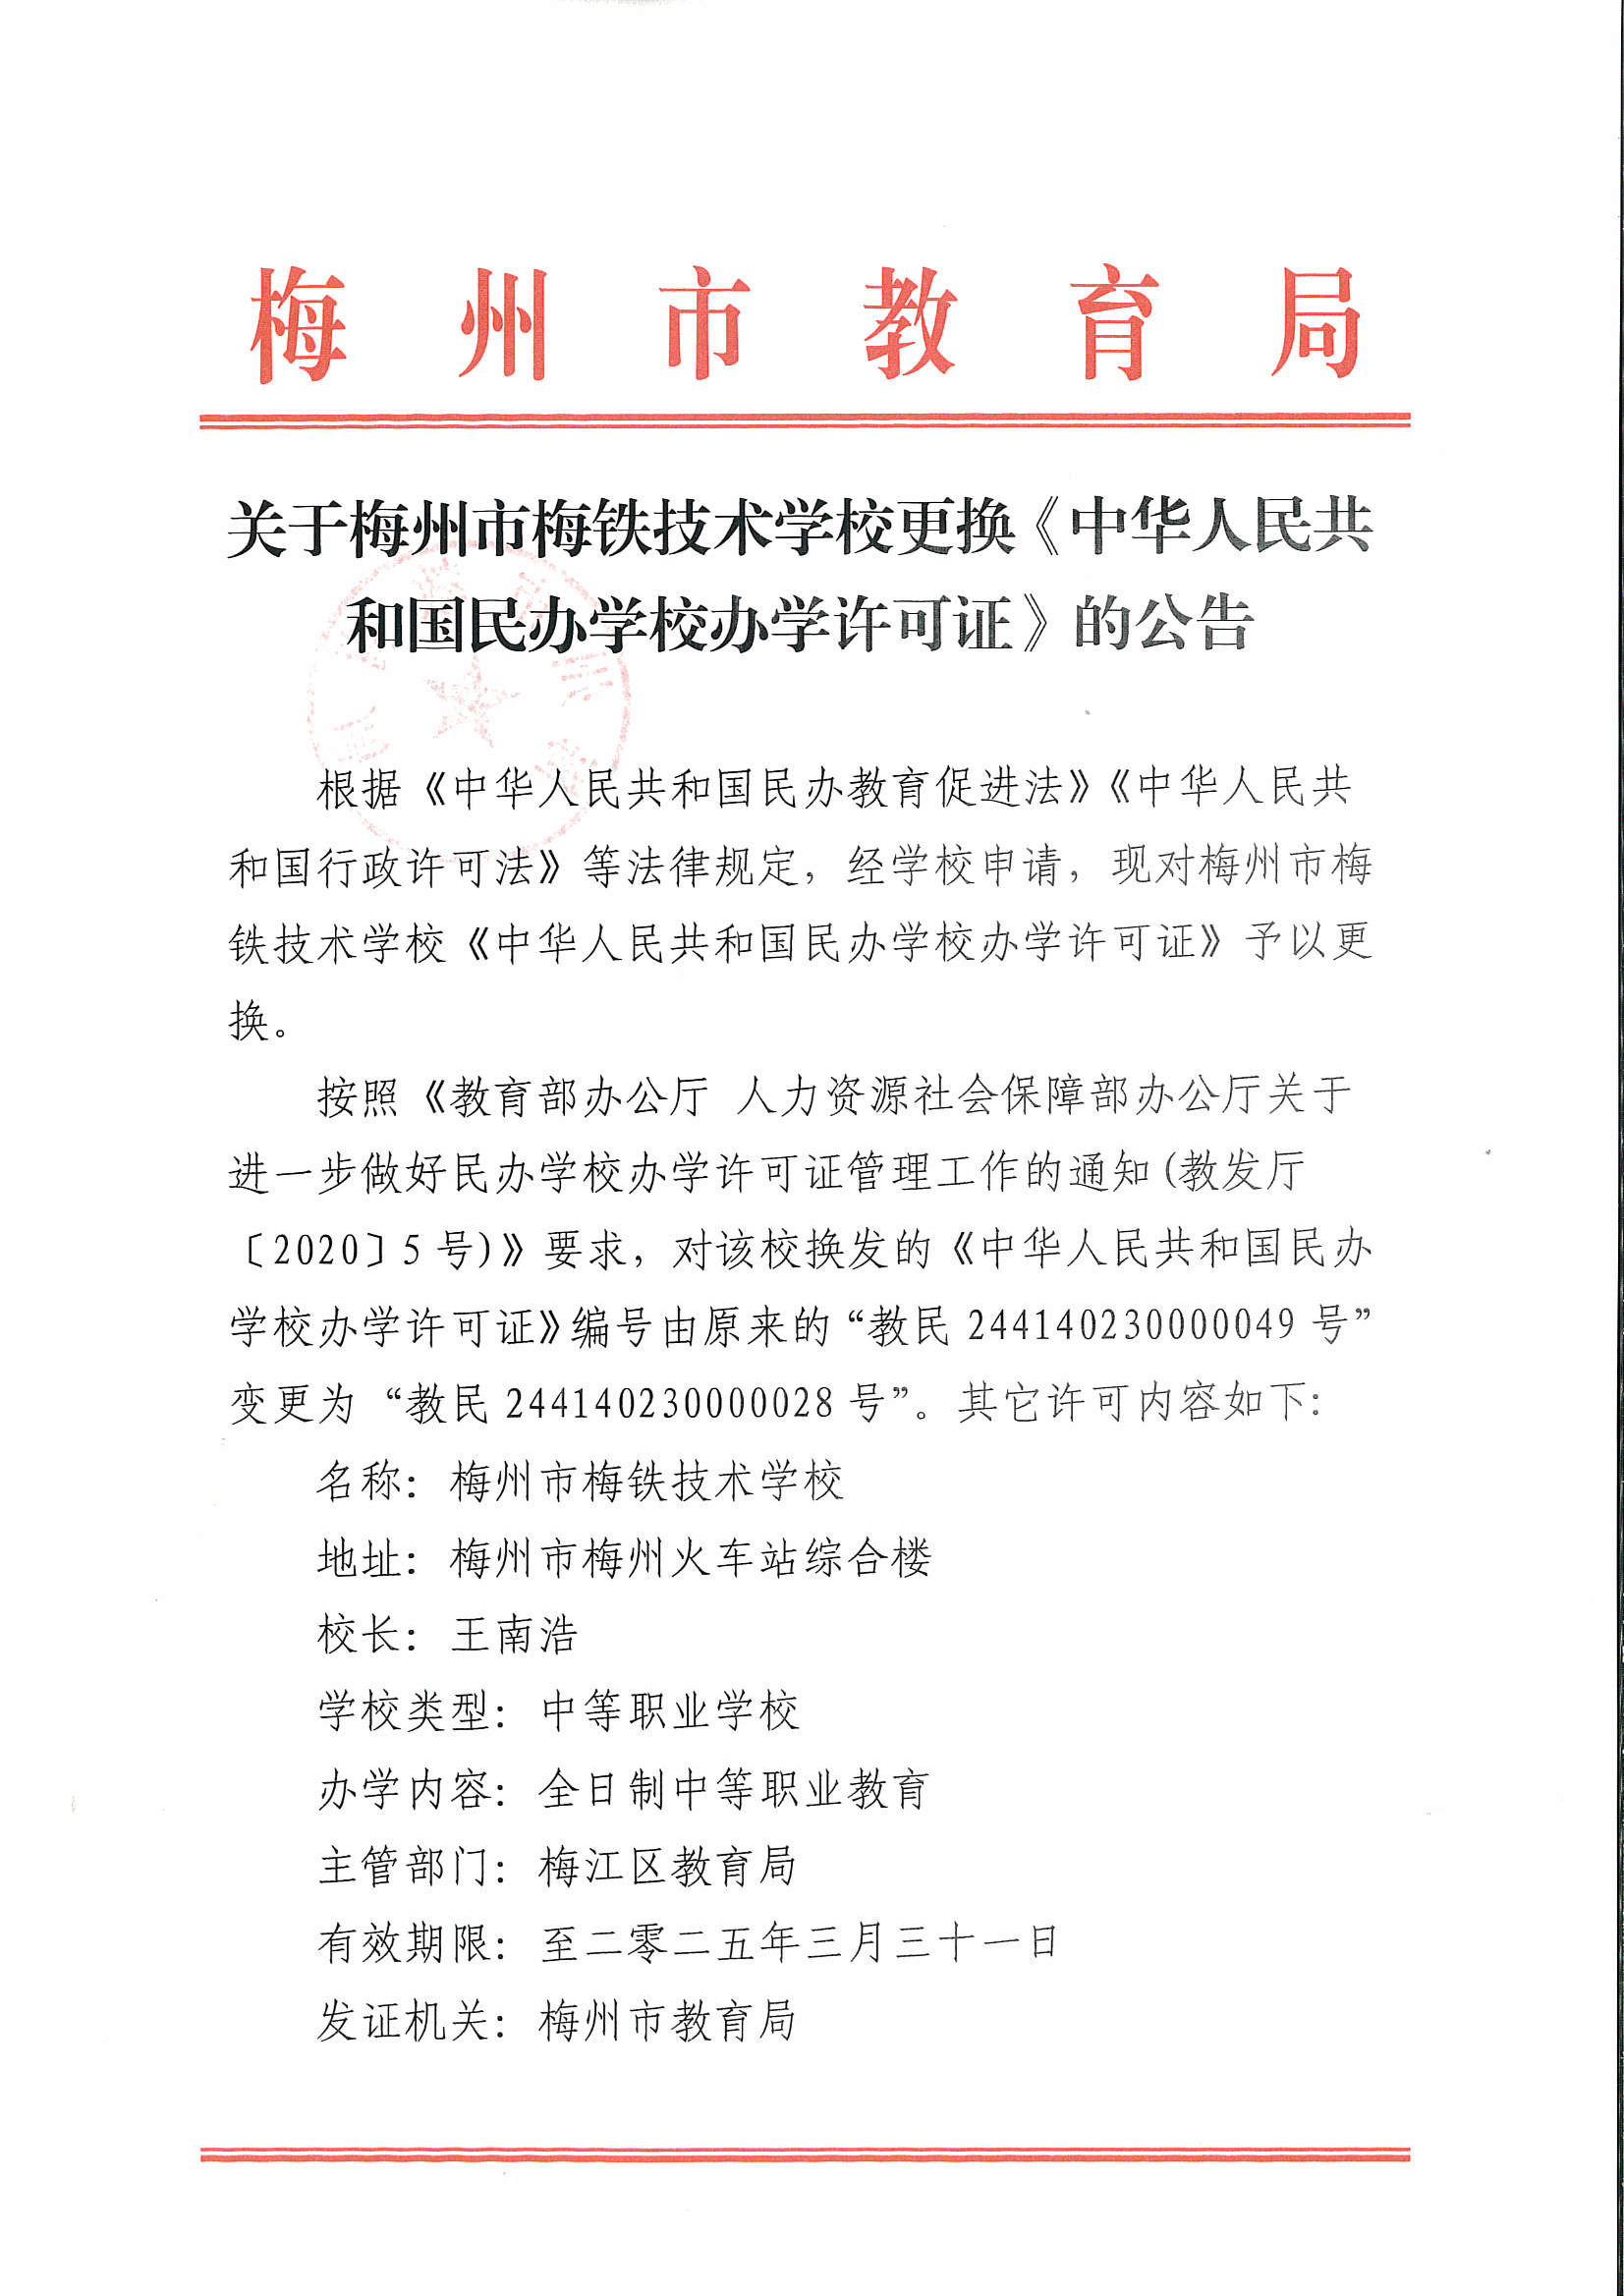 关于梅州市梅铁技术学校更换《中华人民共和国民办学校办学许可证》的公告_页面_1.png